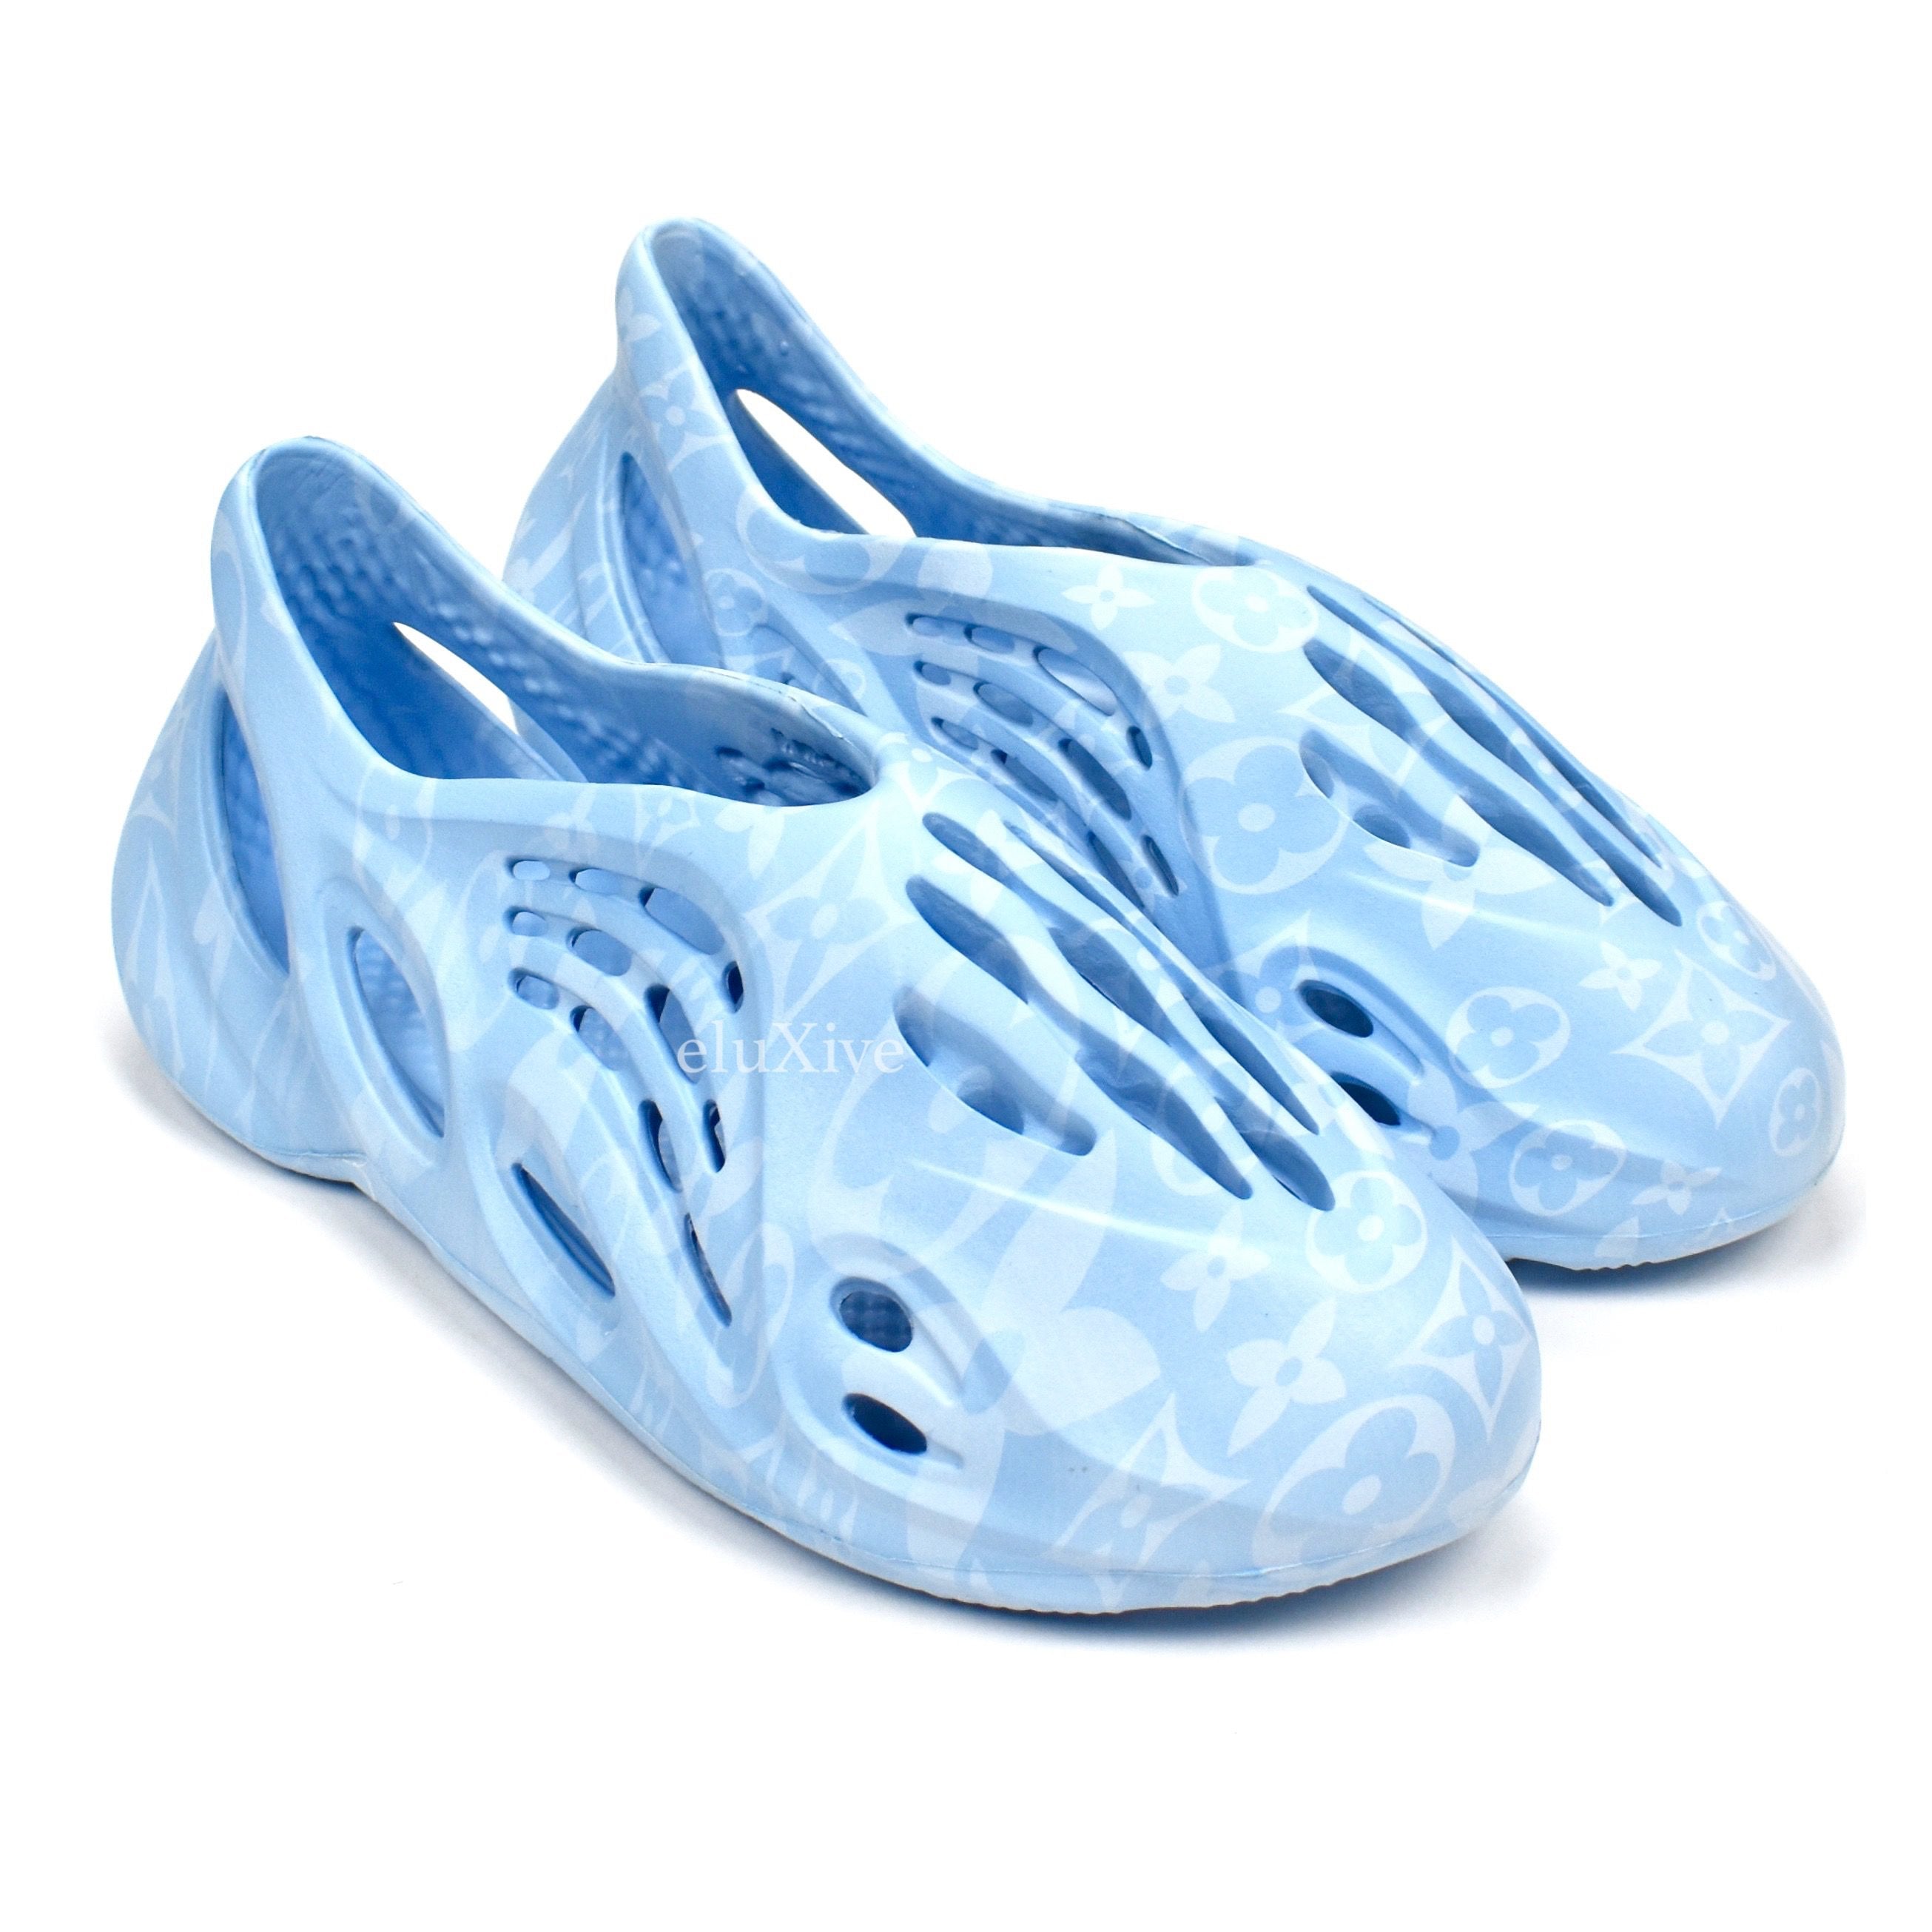 yeezy foam runner blue release date - OFF-62% > Shipping free